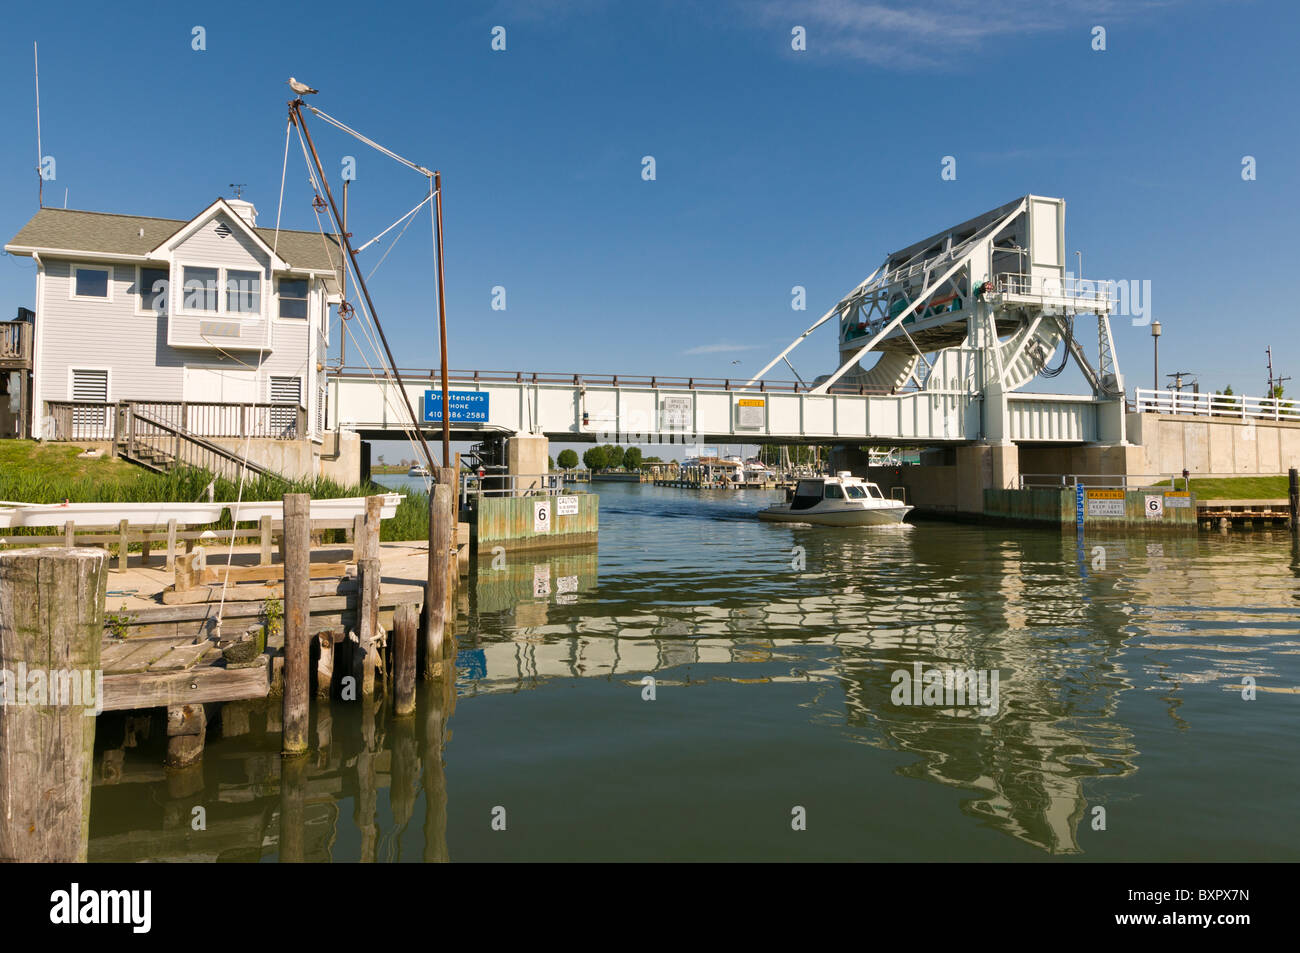 Knapps si restringe ponte levatoio, il ponte levatoio più trafficato negli Stati Uniti d'America,Tilghman Island, Talbot County, Maryland, Stati Uniti d'America Foto Stock